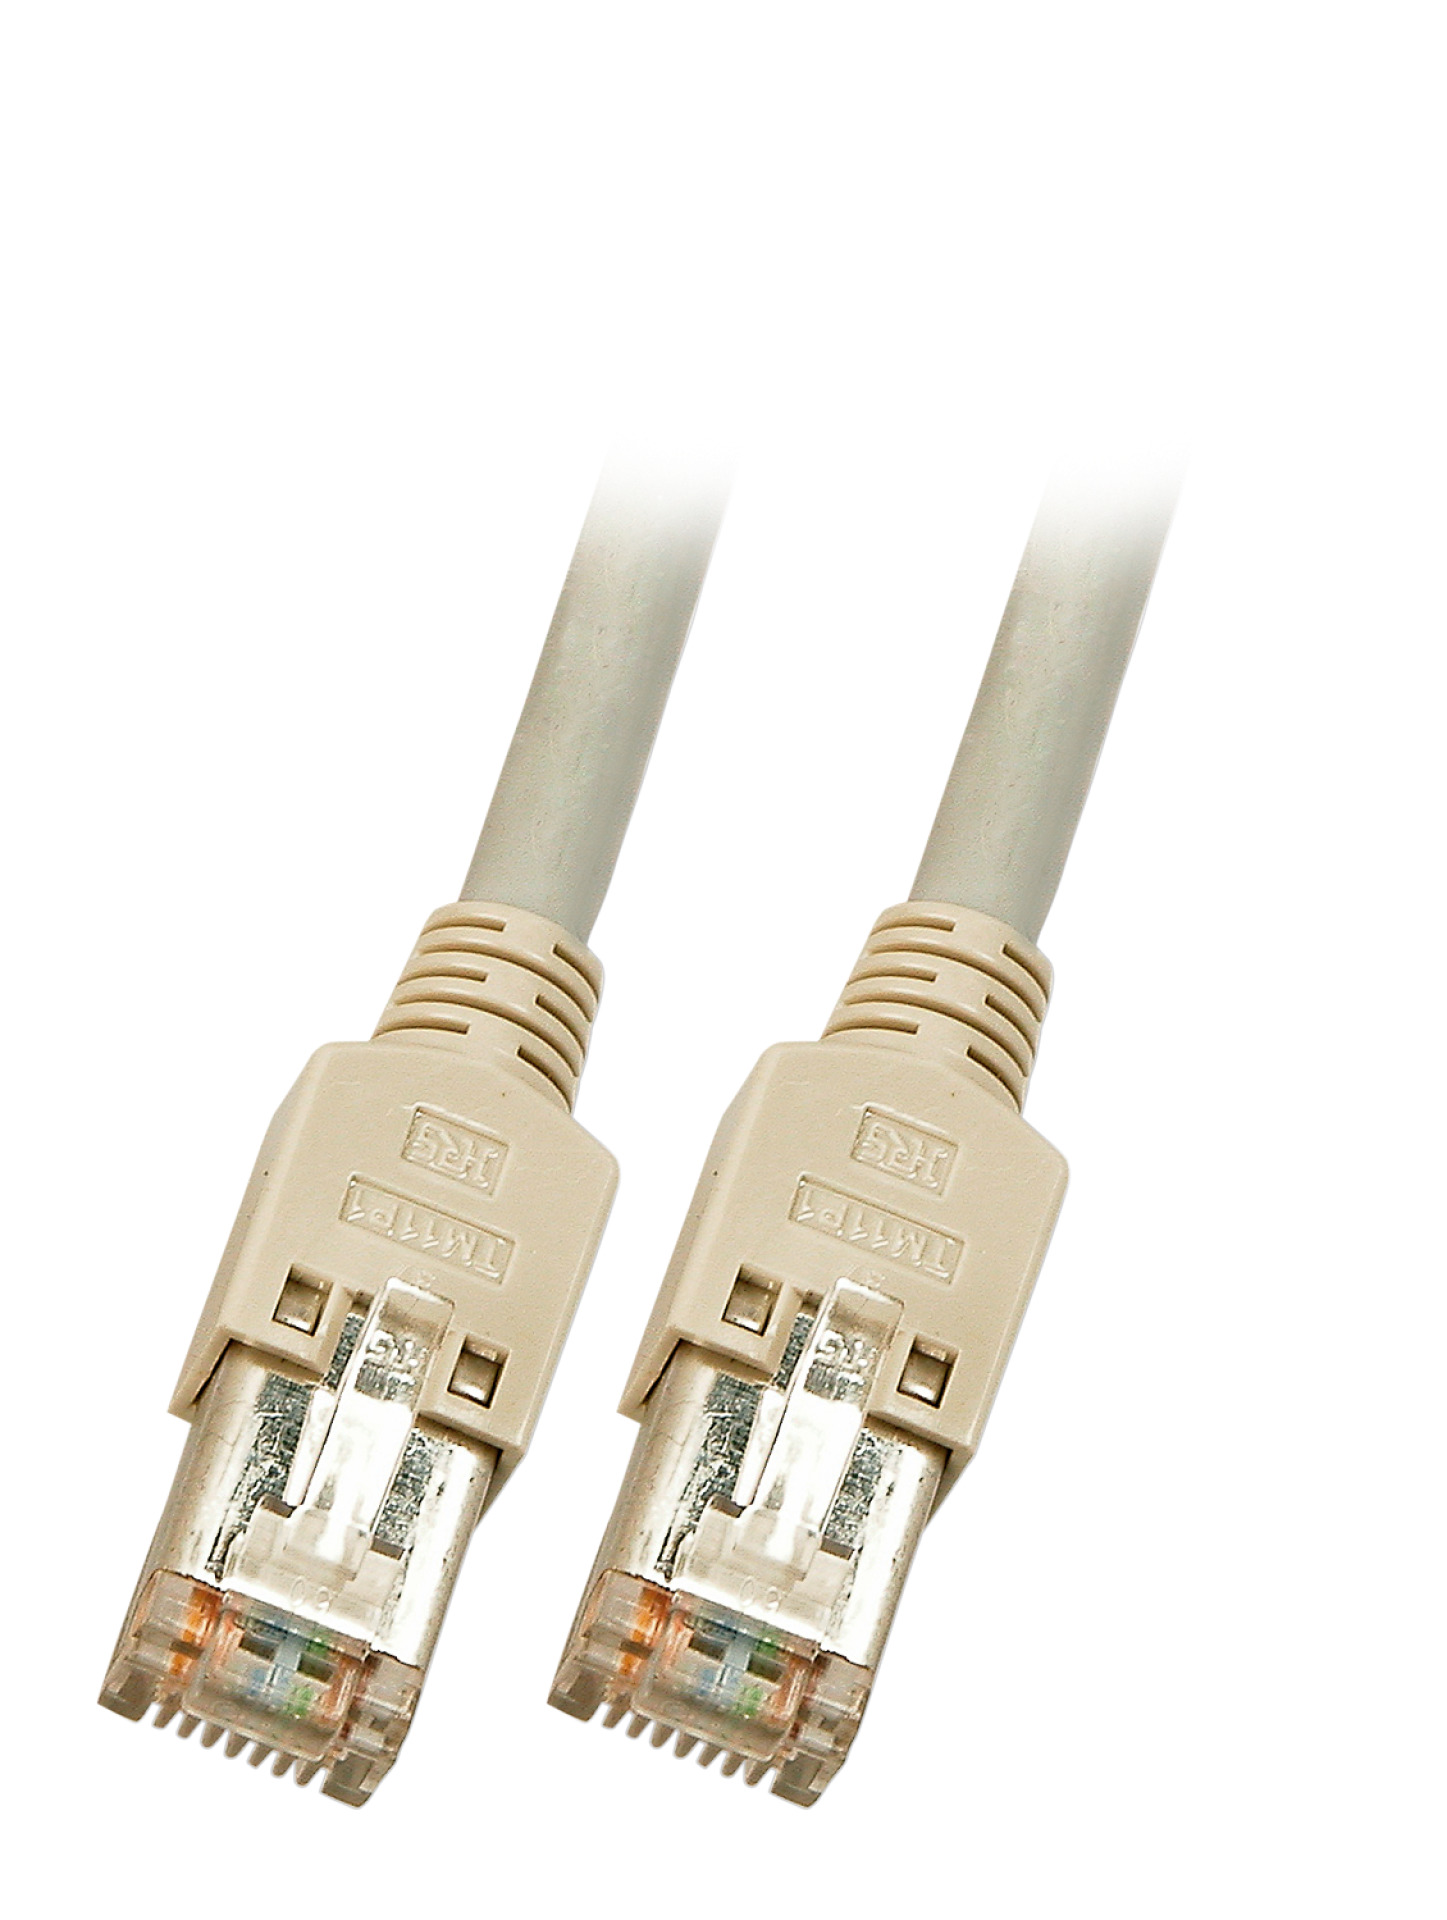 RJ45 Patch cable S/UTP, Cat.5e, TM11, Dätwyler CU 5502 PVC, 0,5m, grey